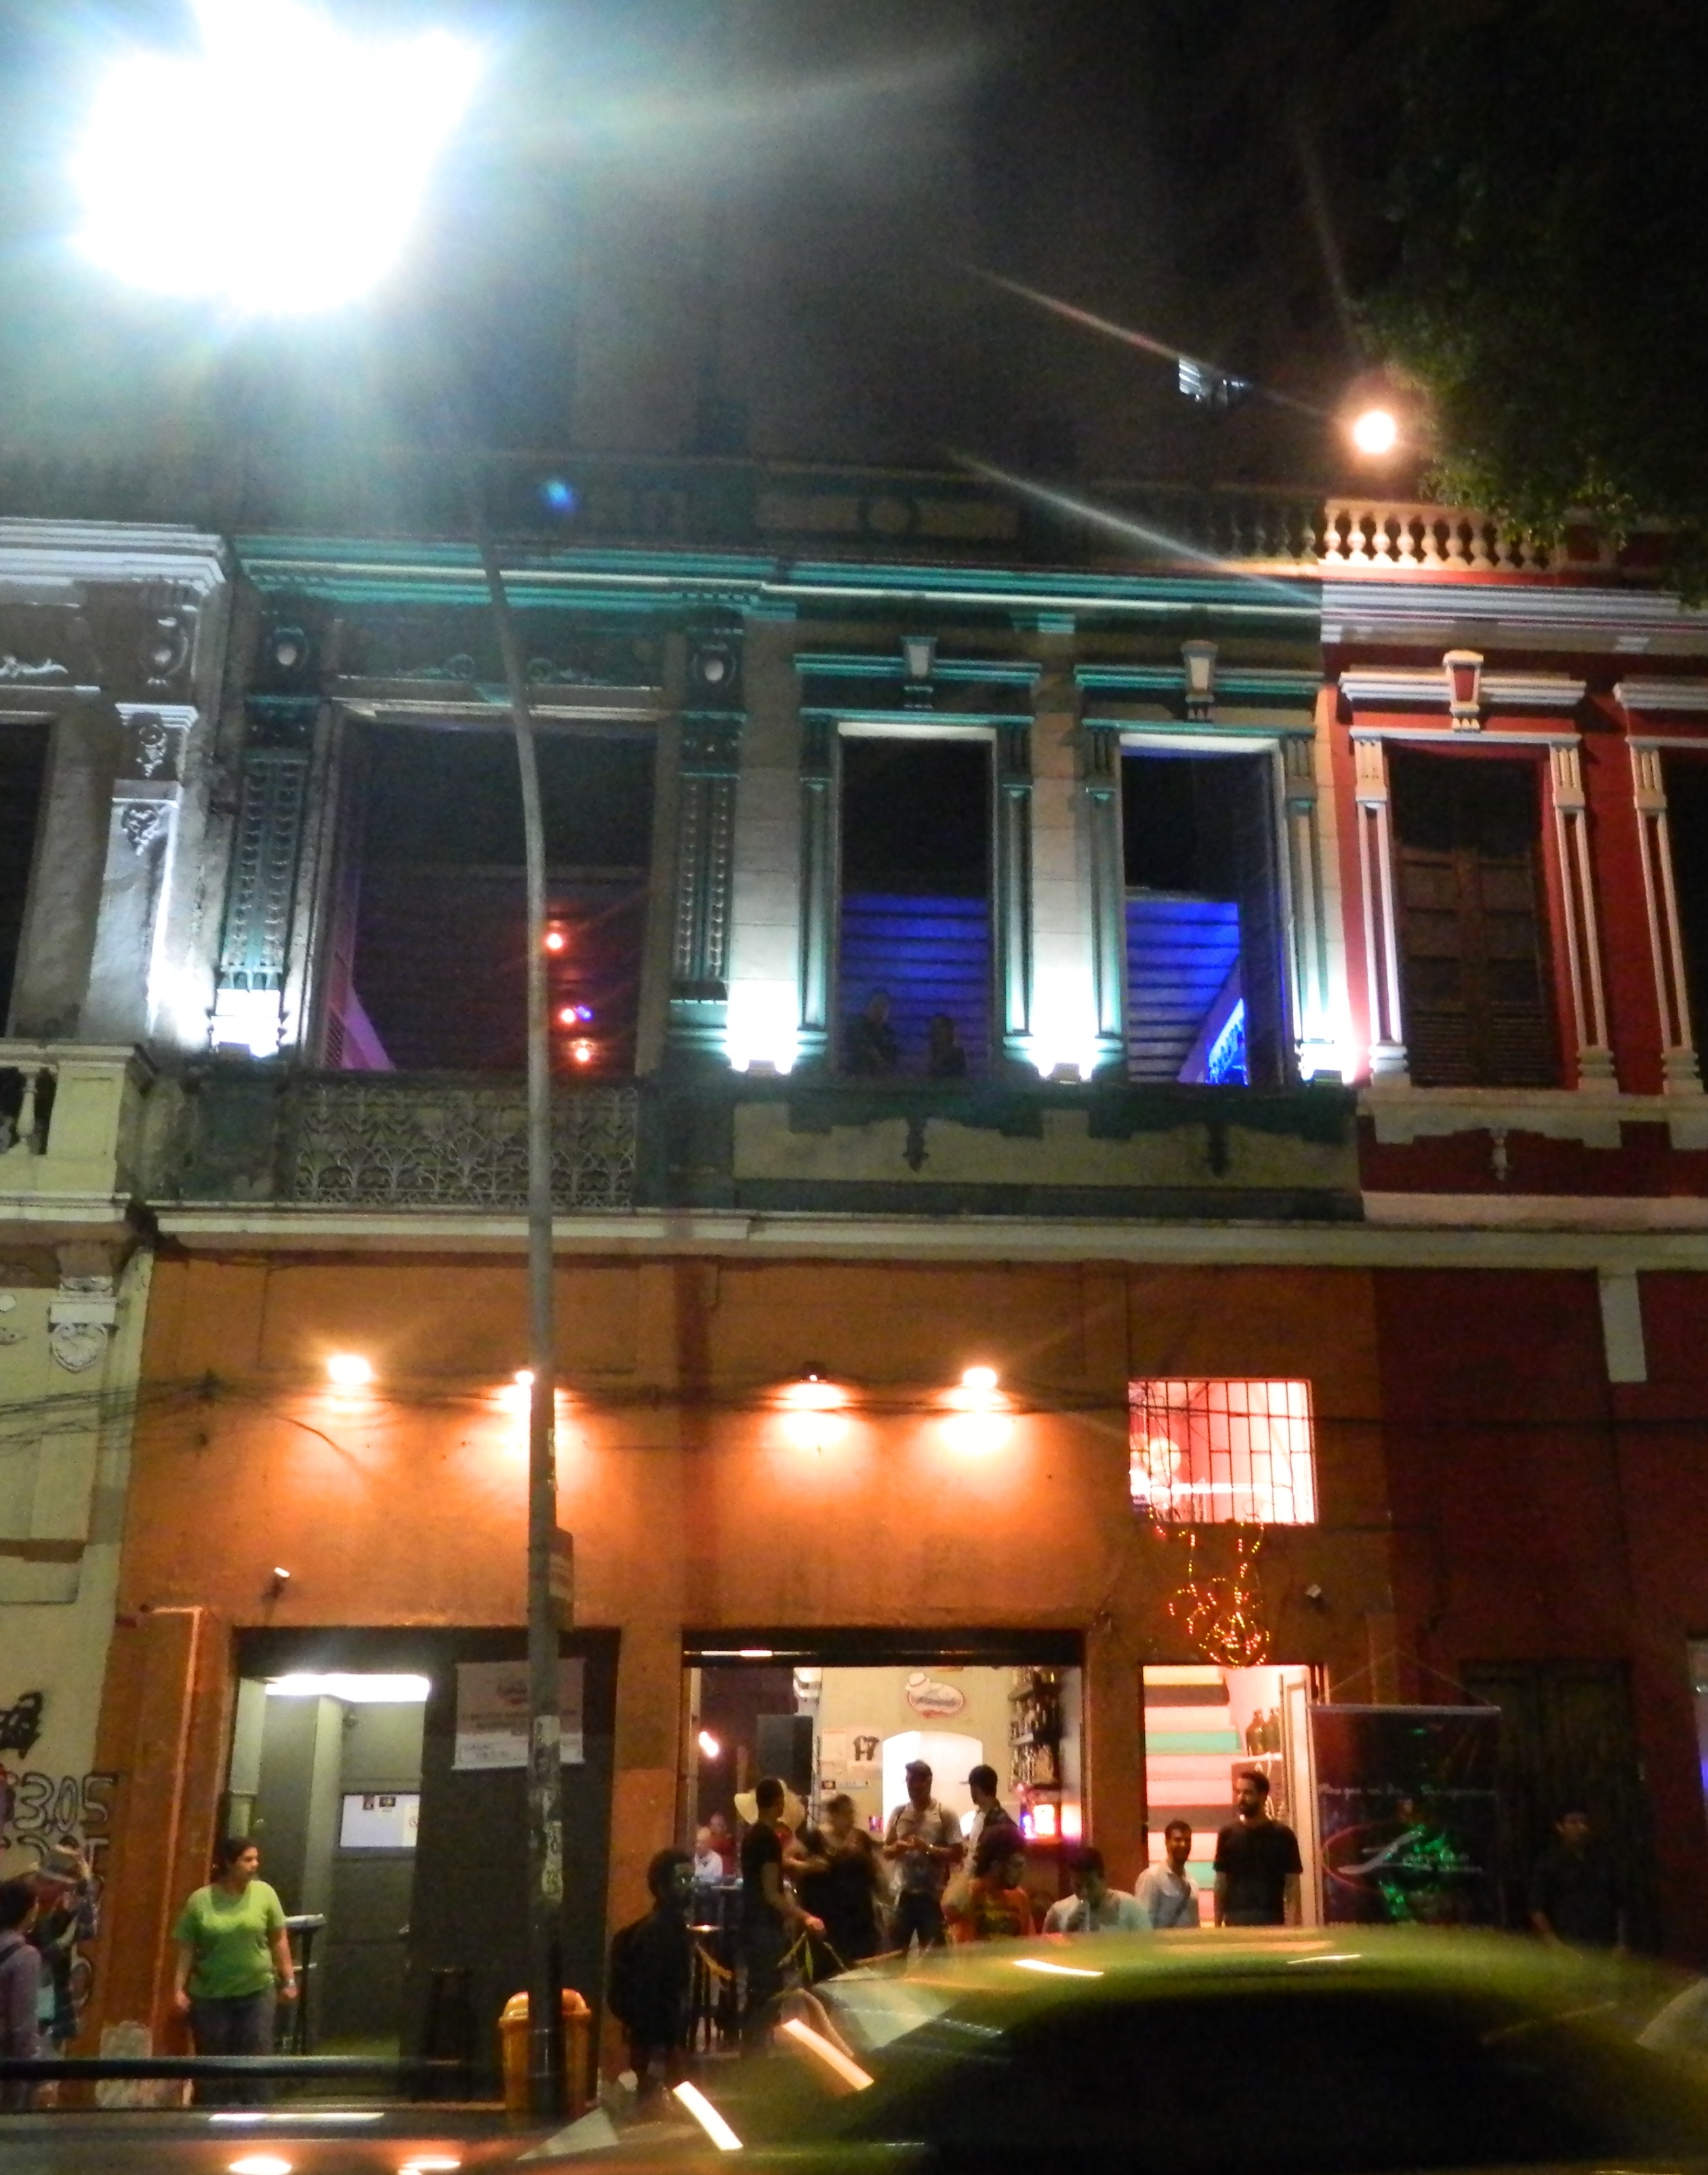 Viagens: Três Festas Oficiais da Parada do Orgulho LGBT Rio 2013